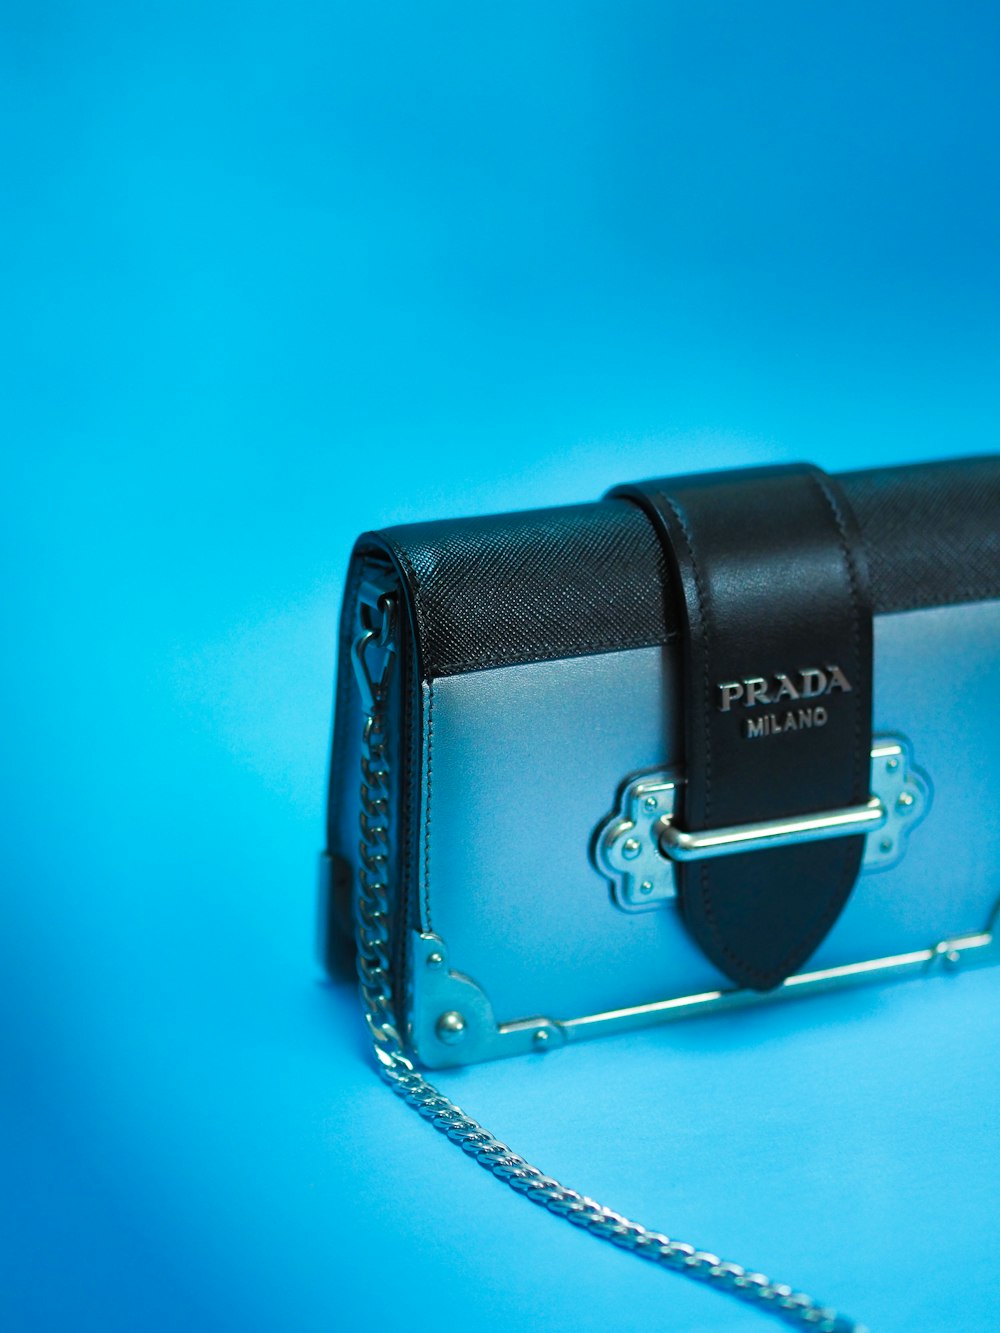 black leather sling bag on blue surface